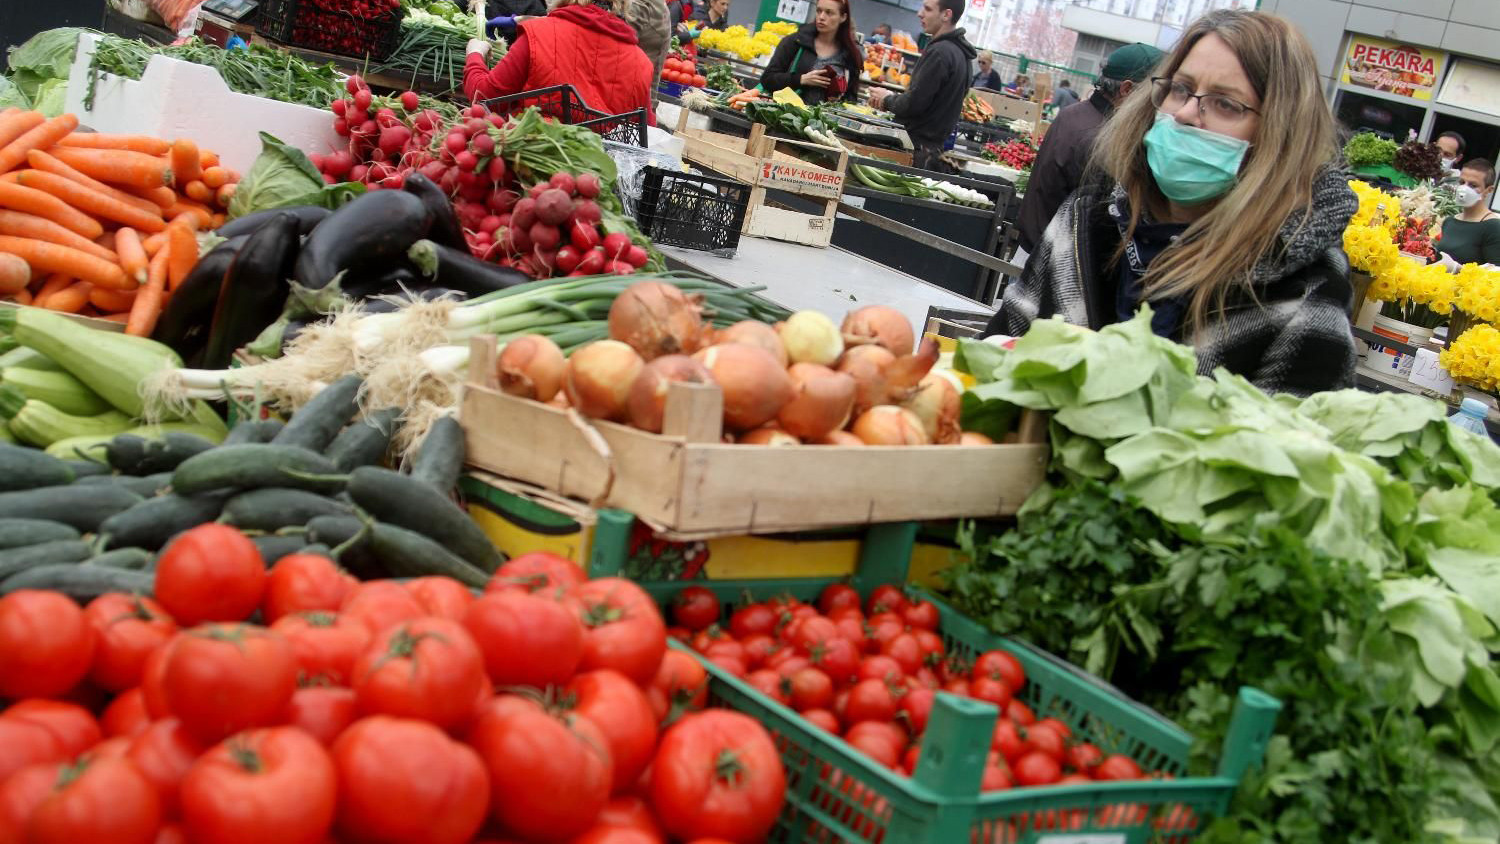 Turska će smanjiti porez na osnovne namirnice zbog inflacije 1